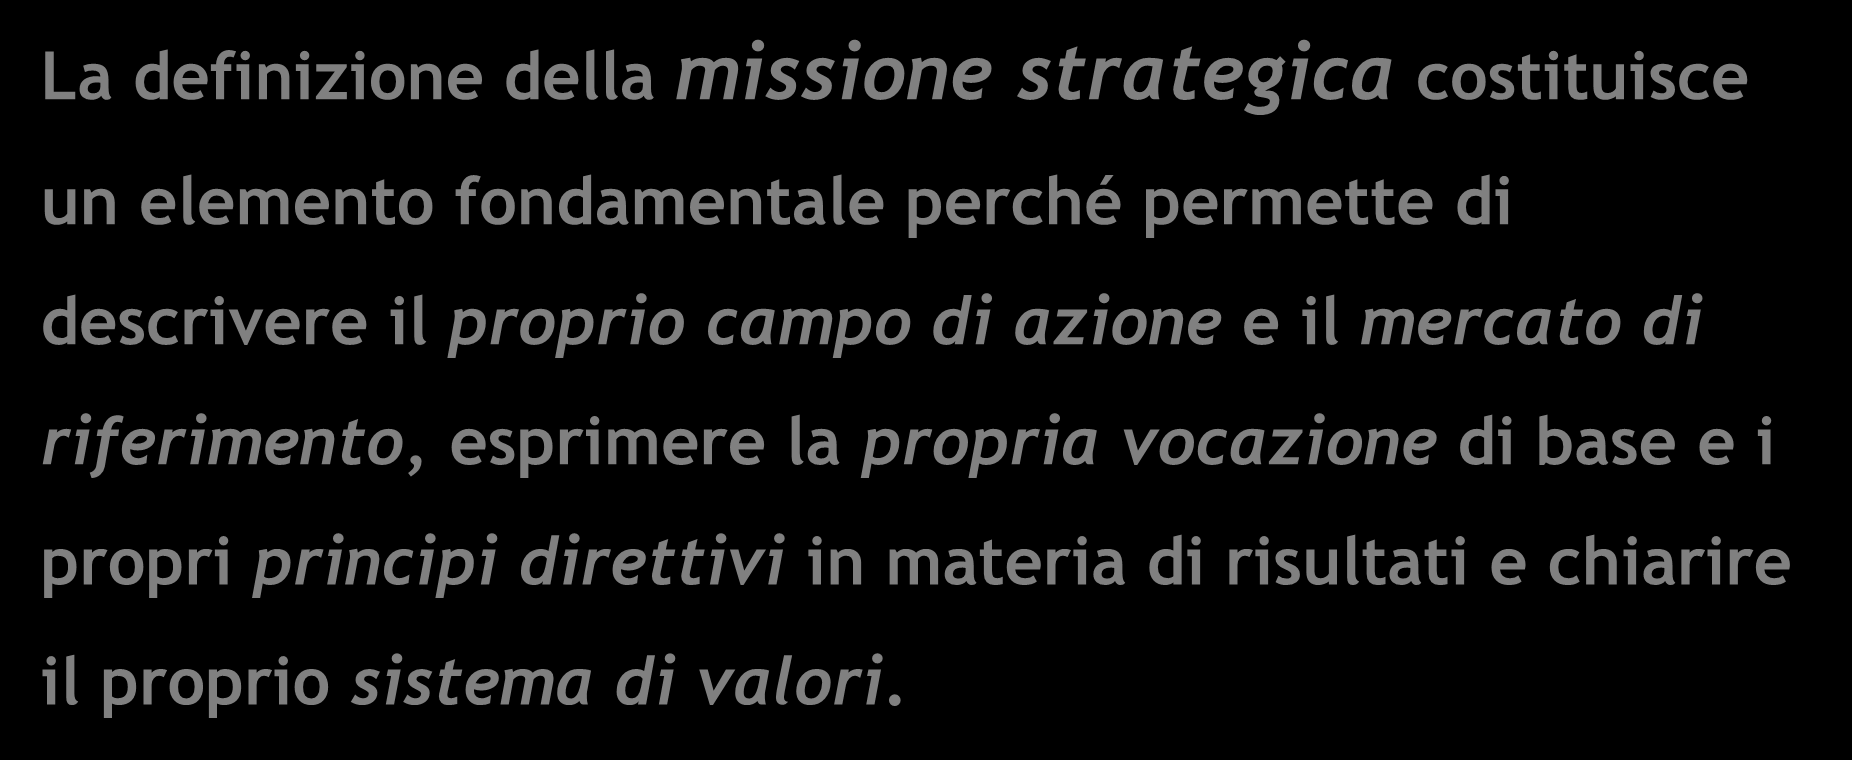 DEFINIZIONE DELLA MISSIONE STRATEGICA La definizione della missione strategica costituisce un elemento fondamentale perché permette di descrivere il proprio campo di